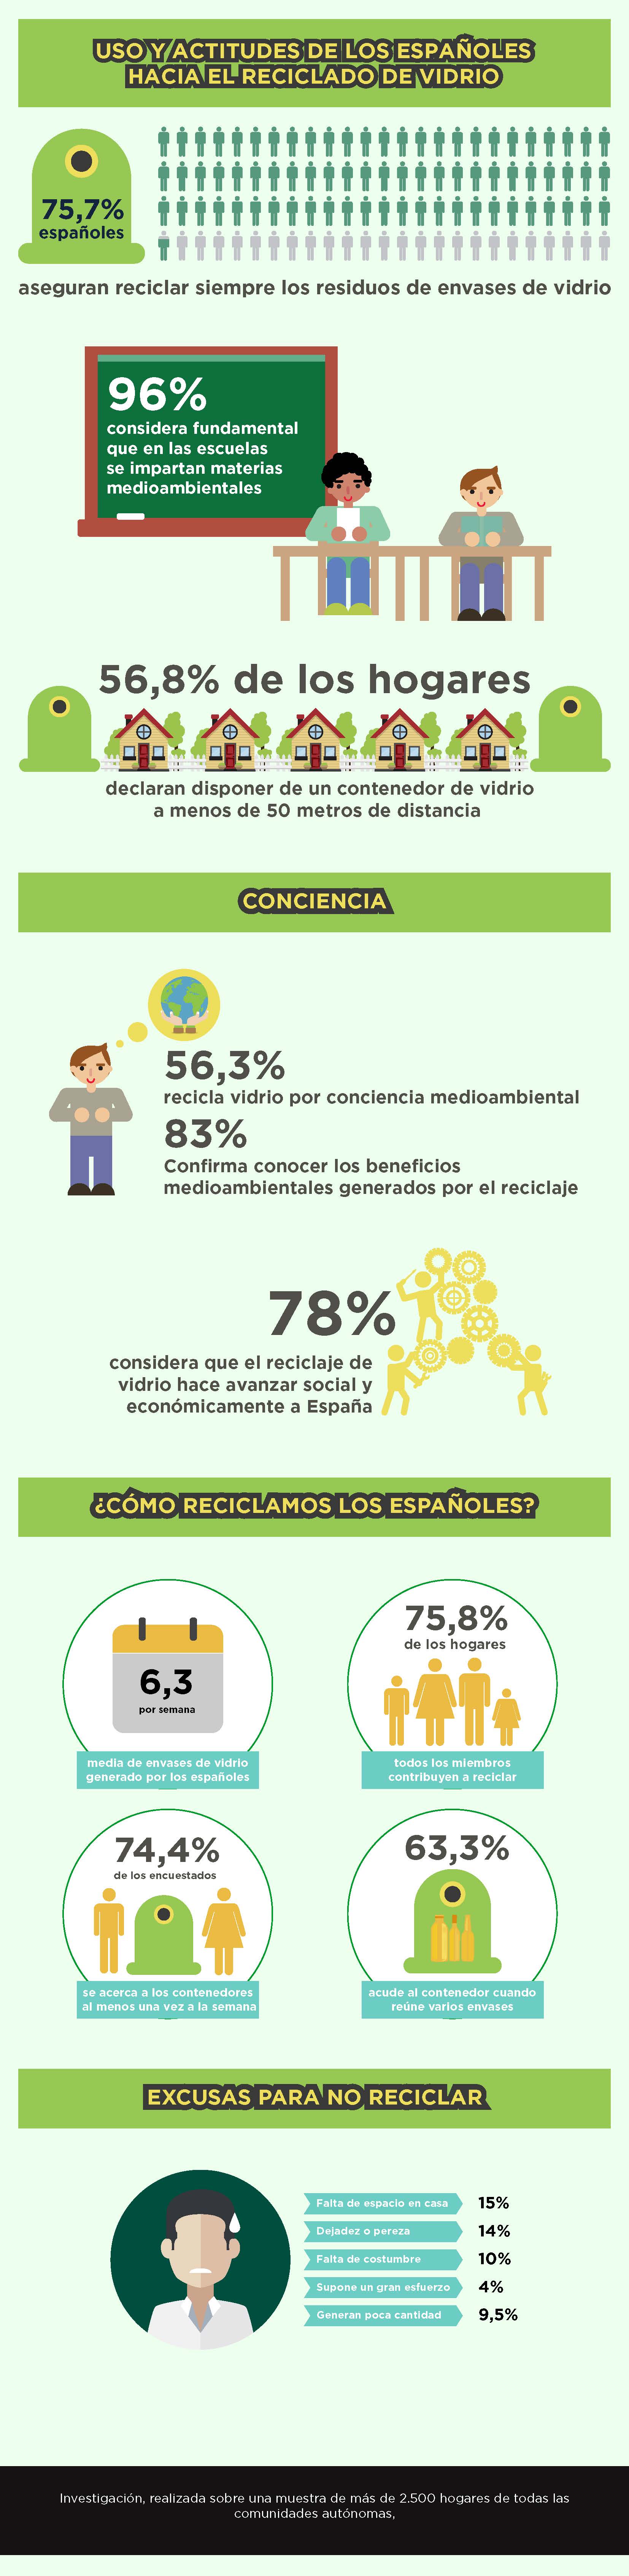 Economía circular, reciclaje, Ecovidrio